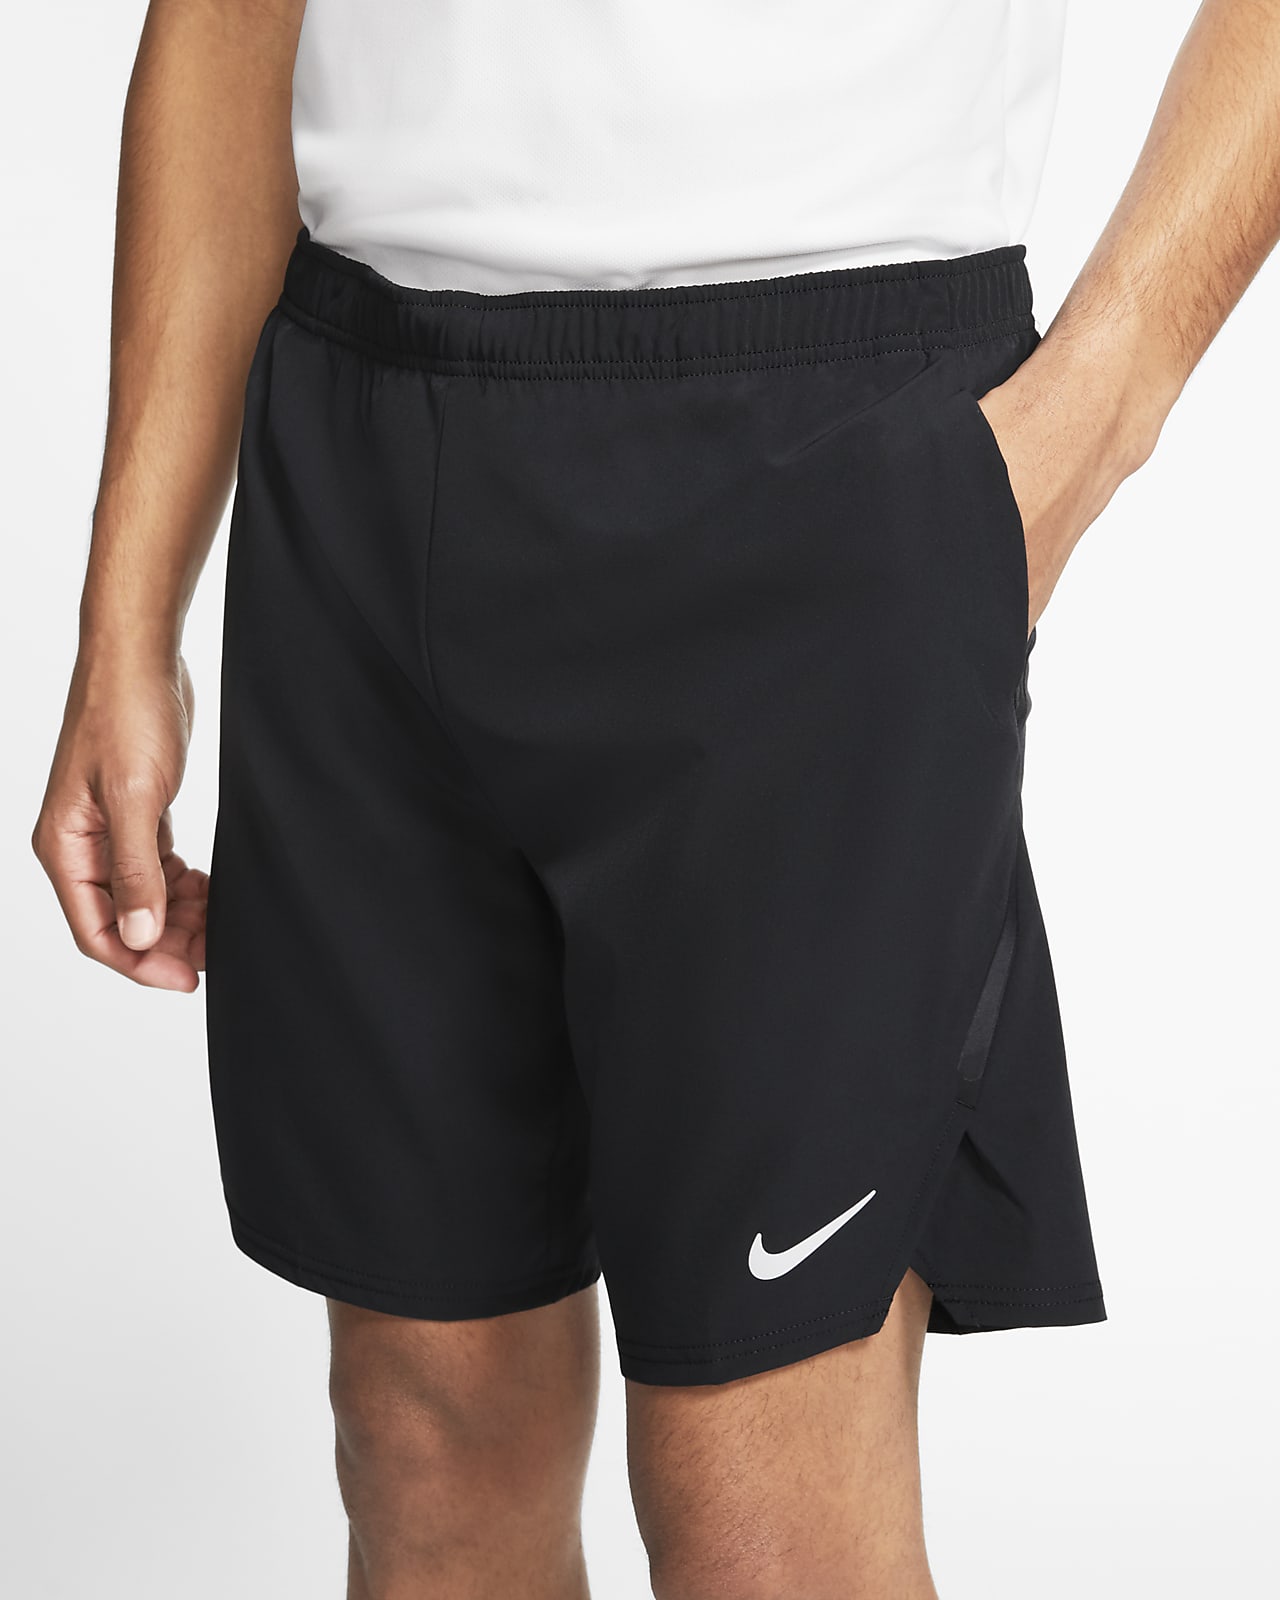 NikeCourt Flex Ace Men's Tennis Shorts